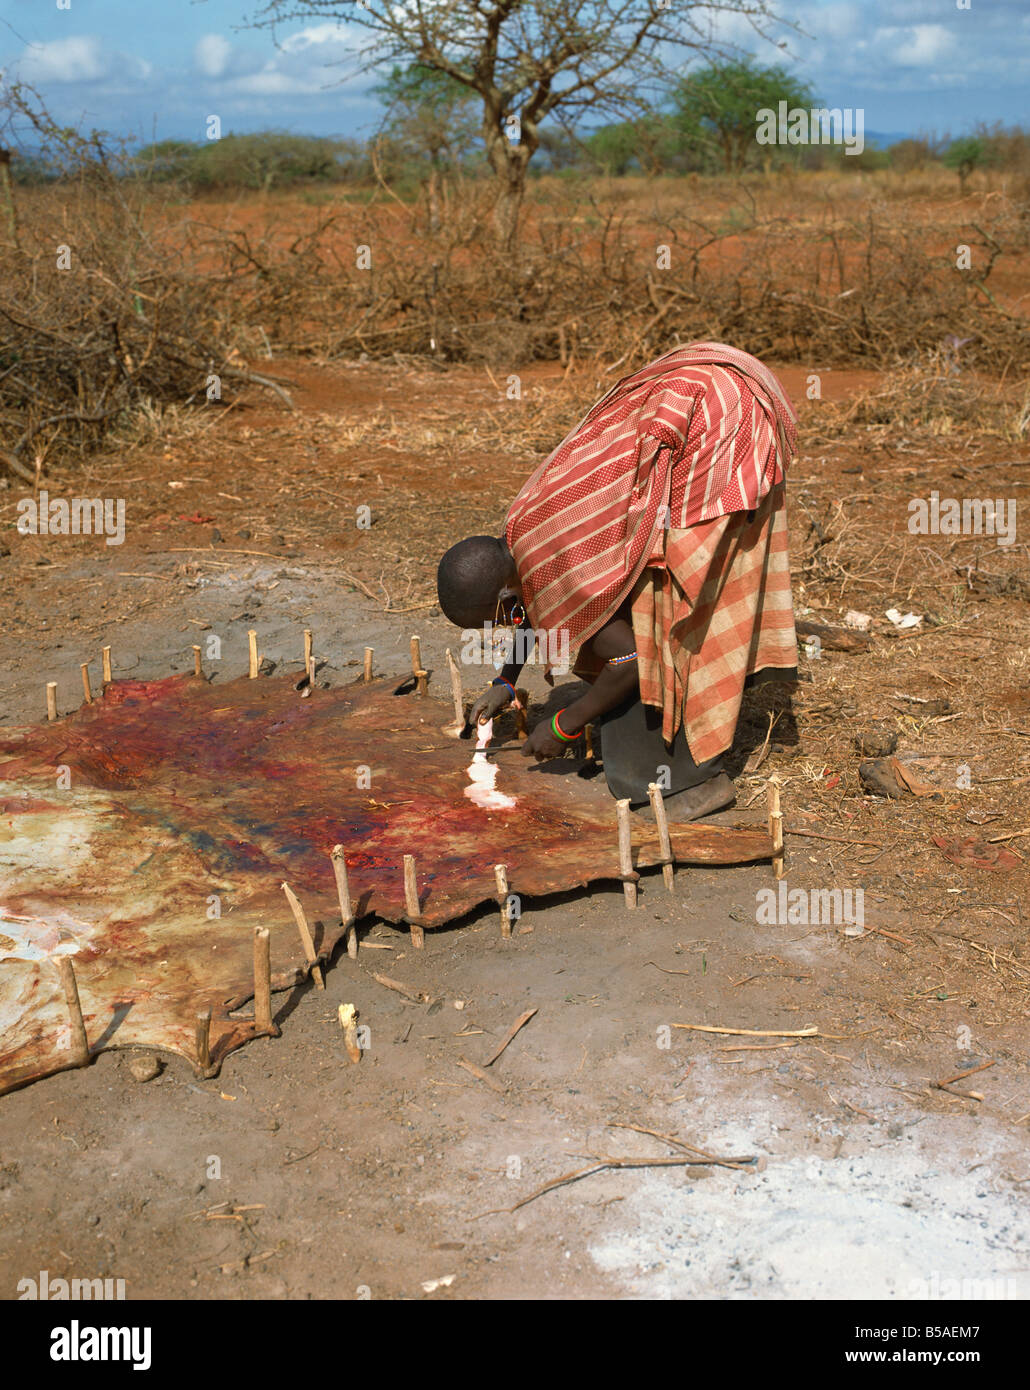 Femme massaï travaillant sur la peau d'animaux Kenya Afrique Afrique de l'Est Banque D'Images